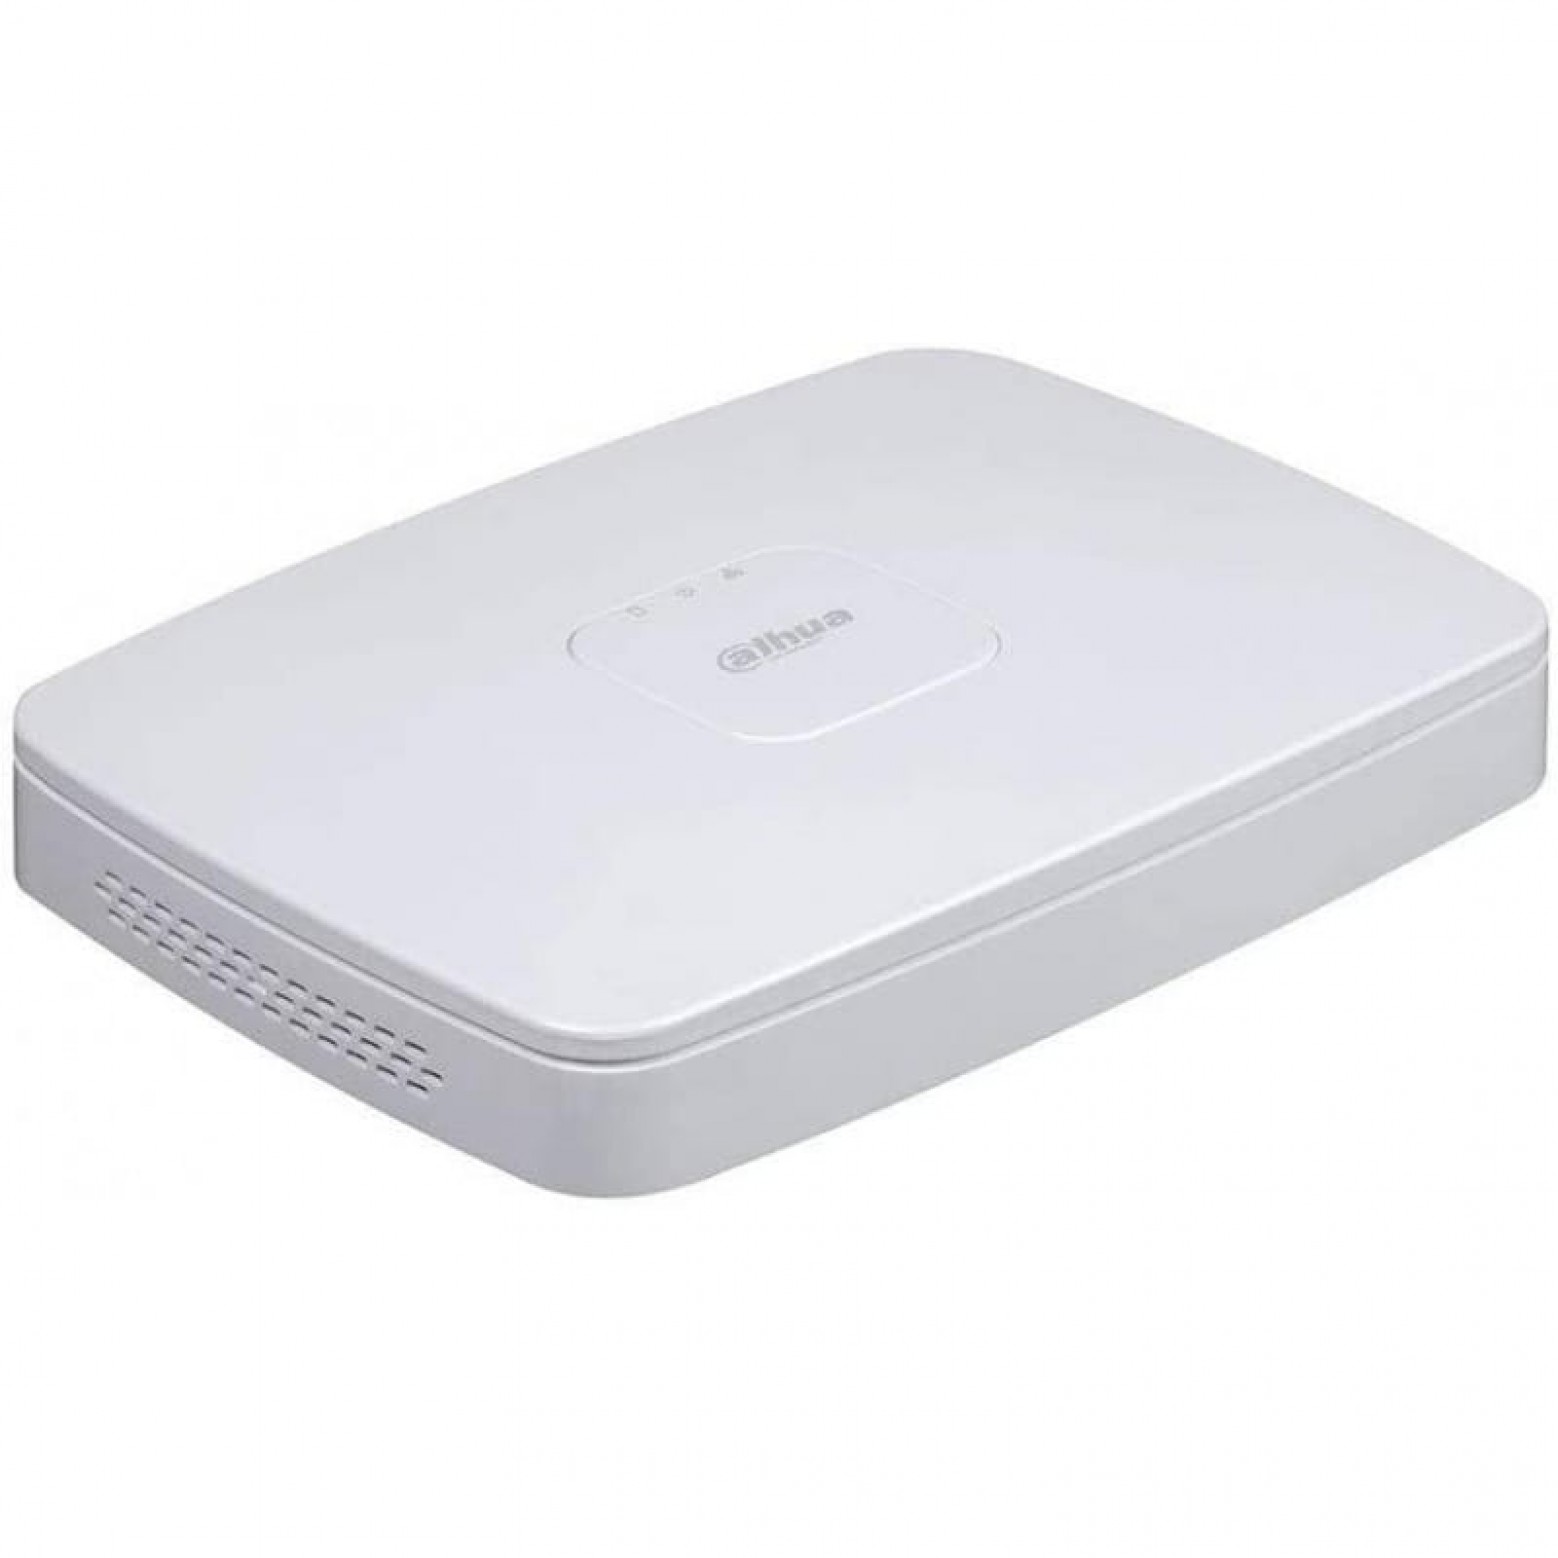 Dahua NVR4108-8P-EI - WizSense - Grabador de vídeo en red - 1x LAN - 8x PoE - Apto para 8 cámaras IP